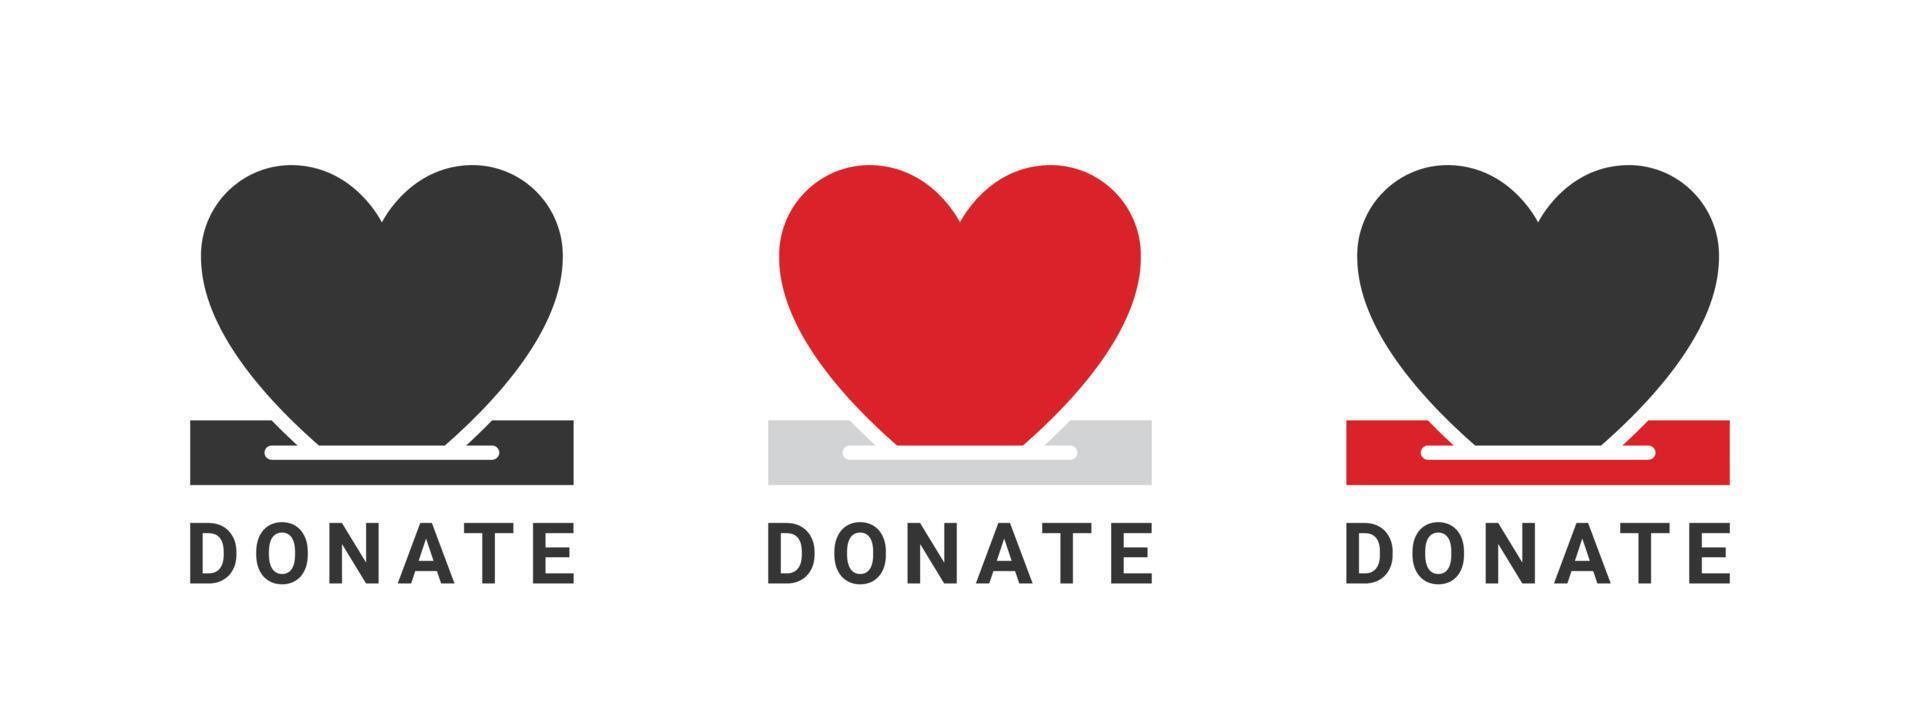 Spendensymbole. Herzen Spendenabzeichen. Wohltätigkeitssymbole. Spendenbezogene Zeichen. Vektor-Illustration vektor